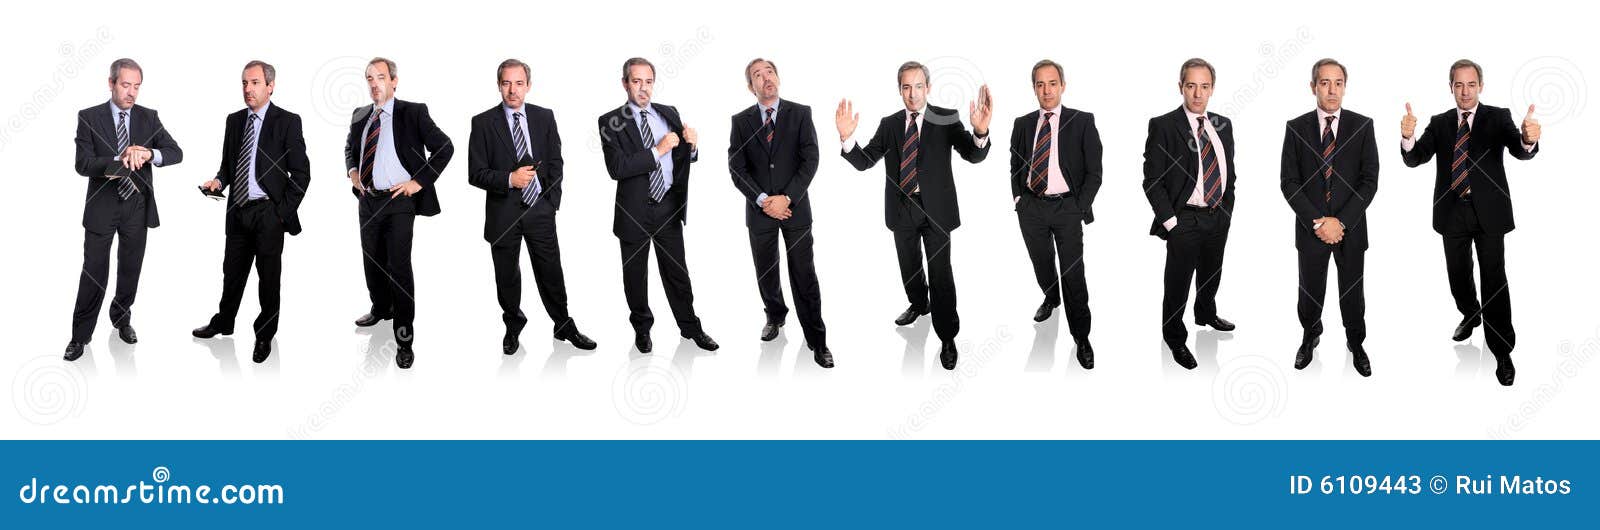 group of businessmen - full body